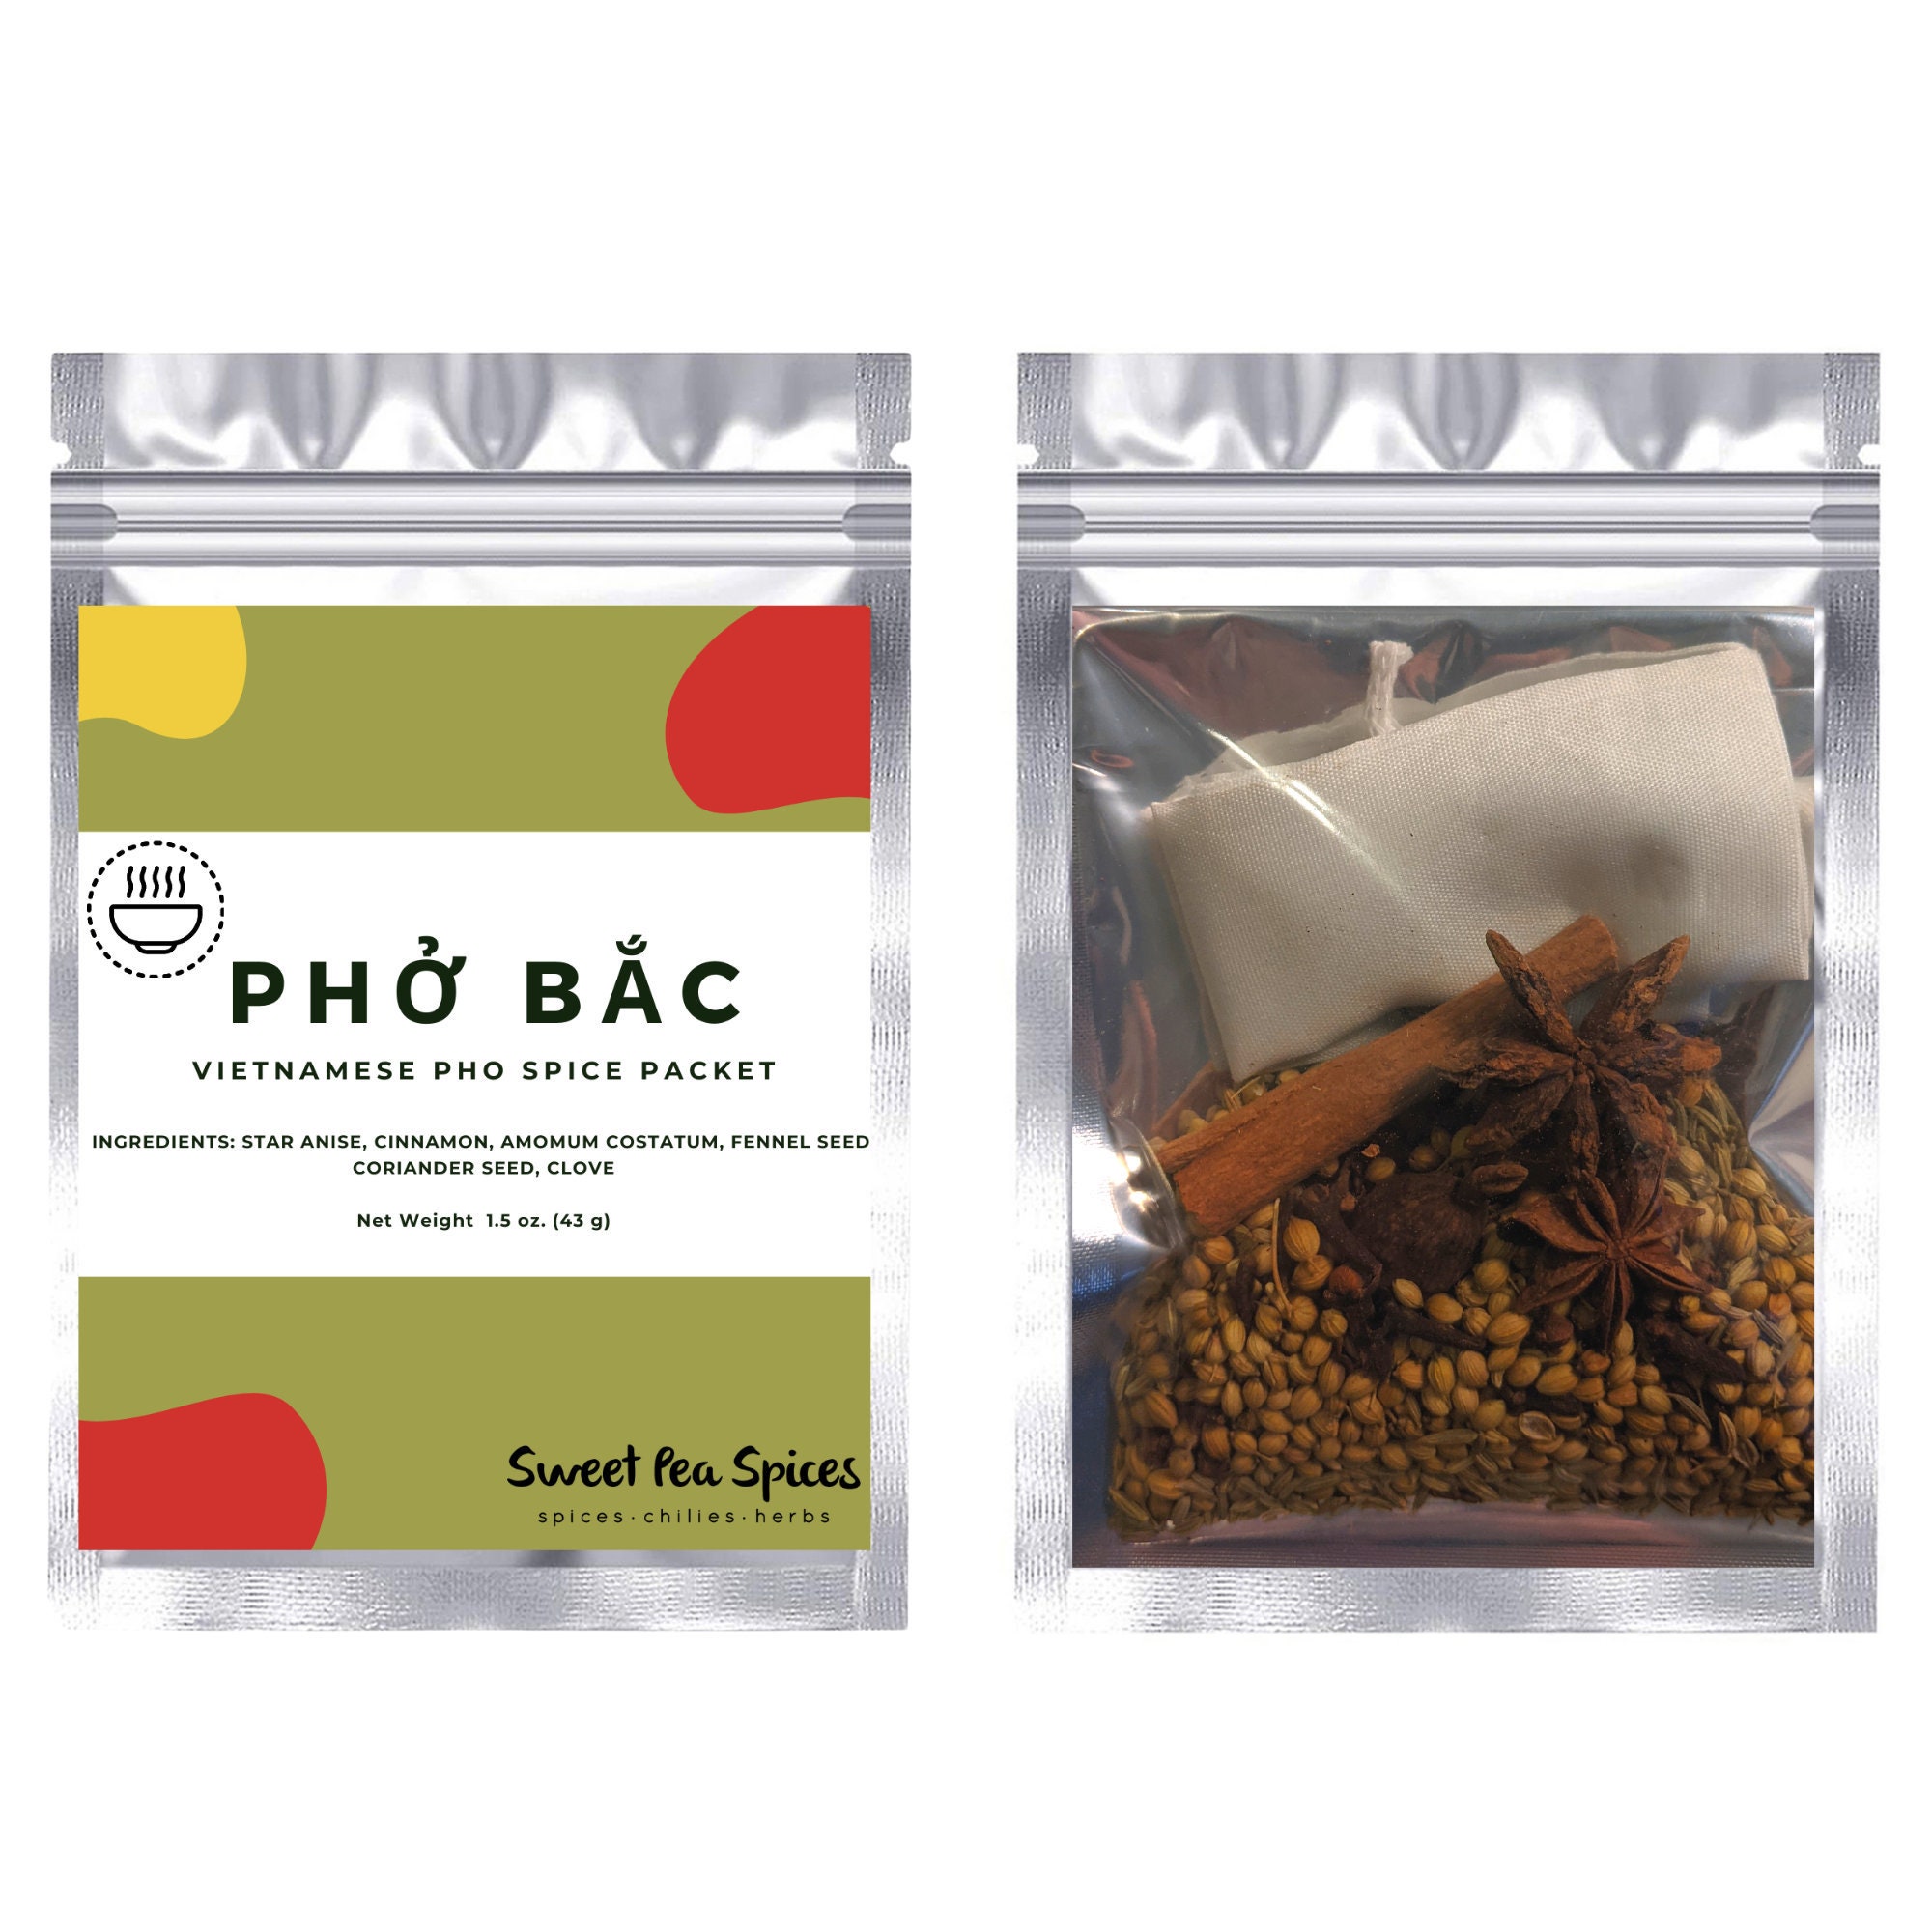 Pho Spice Blend 2 oz Bag